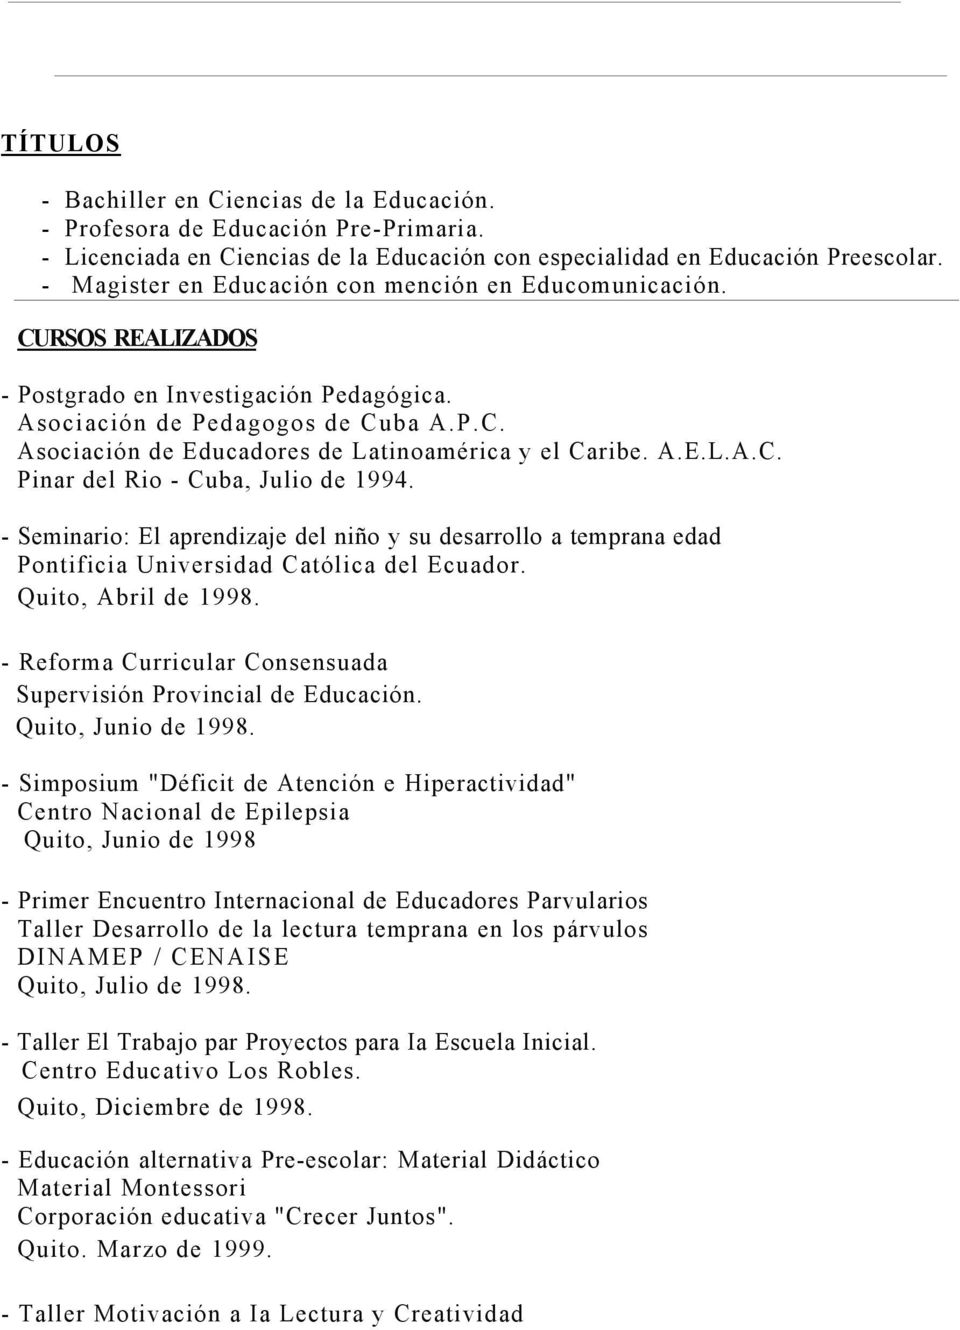 A.E.L.A.C. Pinar del Rio - Cuba, Julio de 1994. - Seminario: El aprendizaje del niño y su desarrollo a temprana edad Pontificia Universidad Católica del Ecuador. Quito, Abril de 1998.